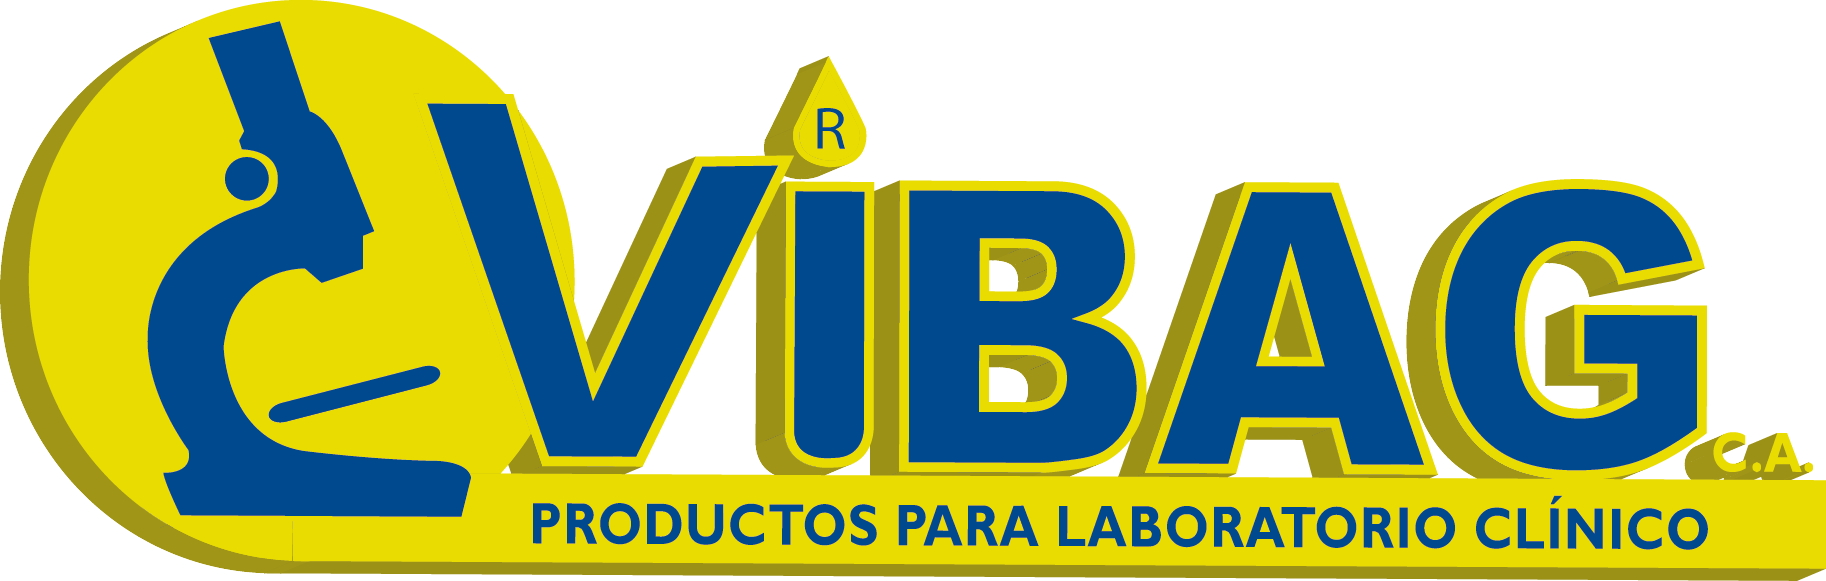 ECUADOR Vibag